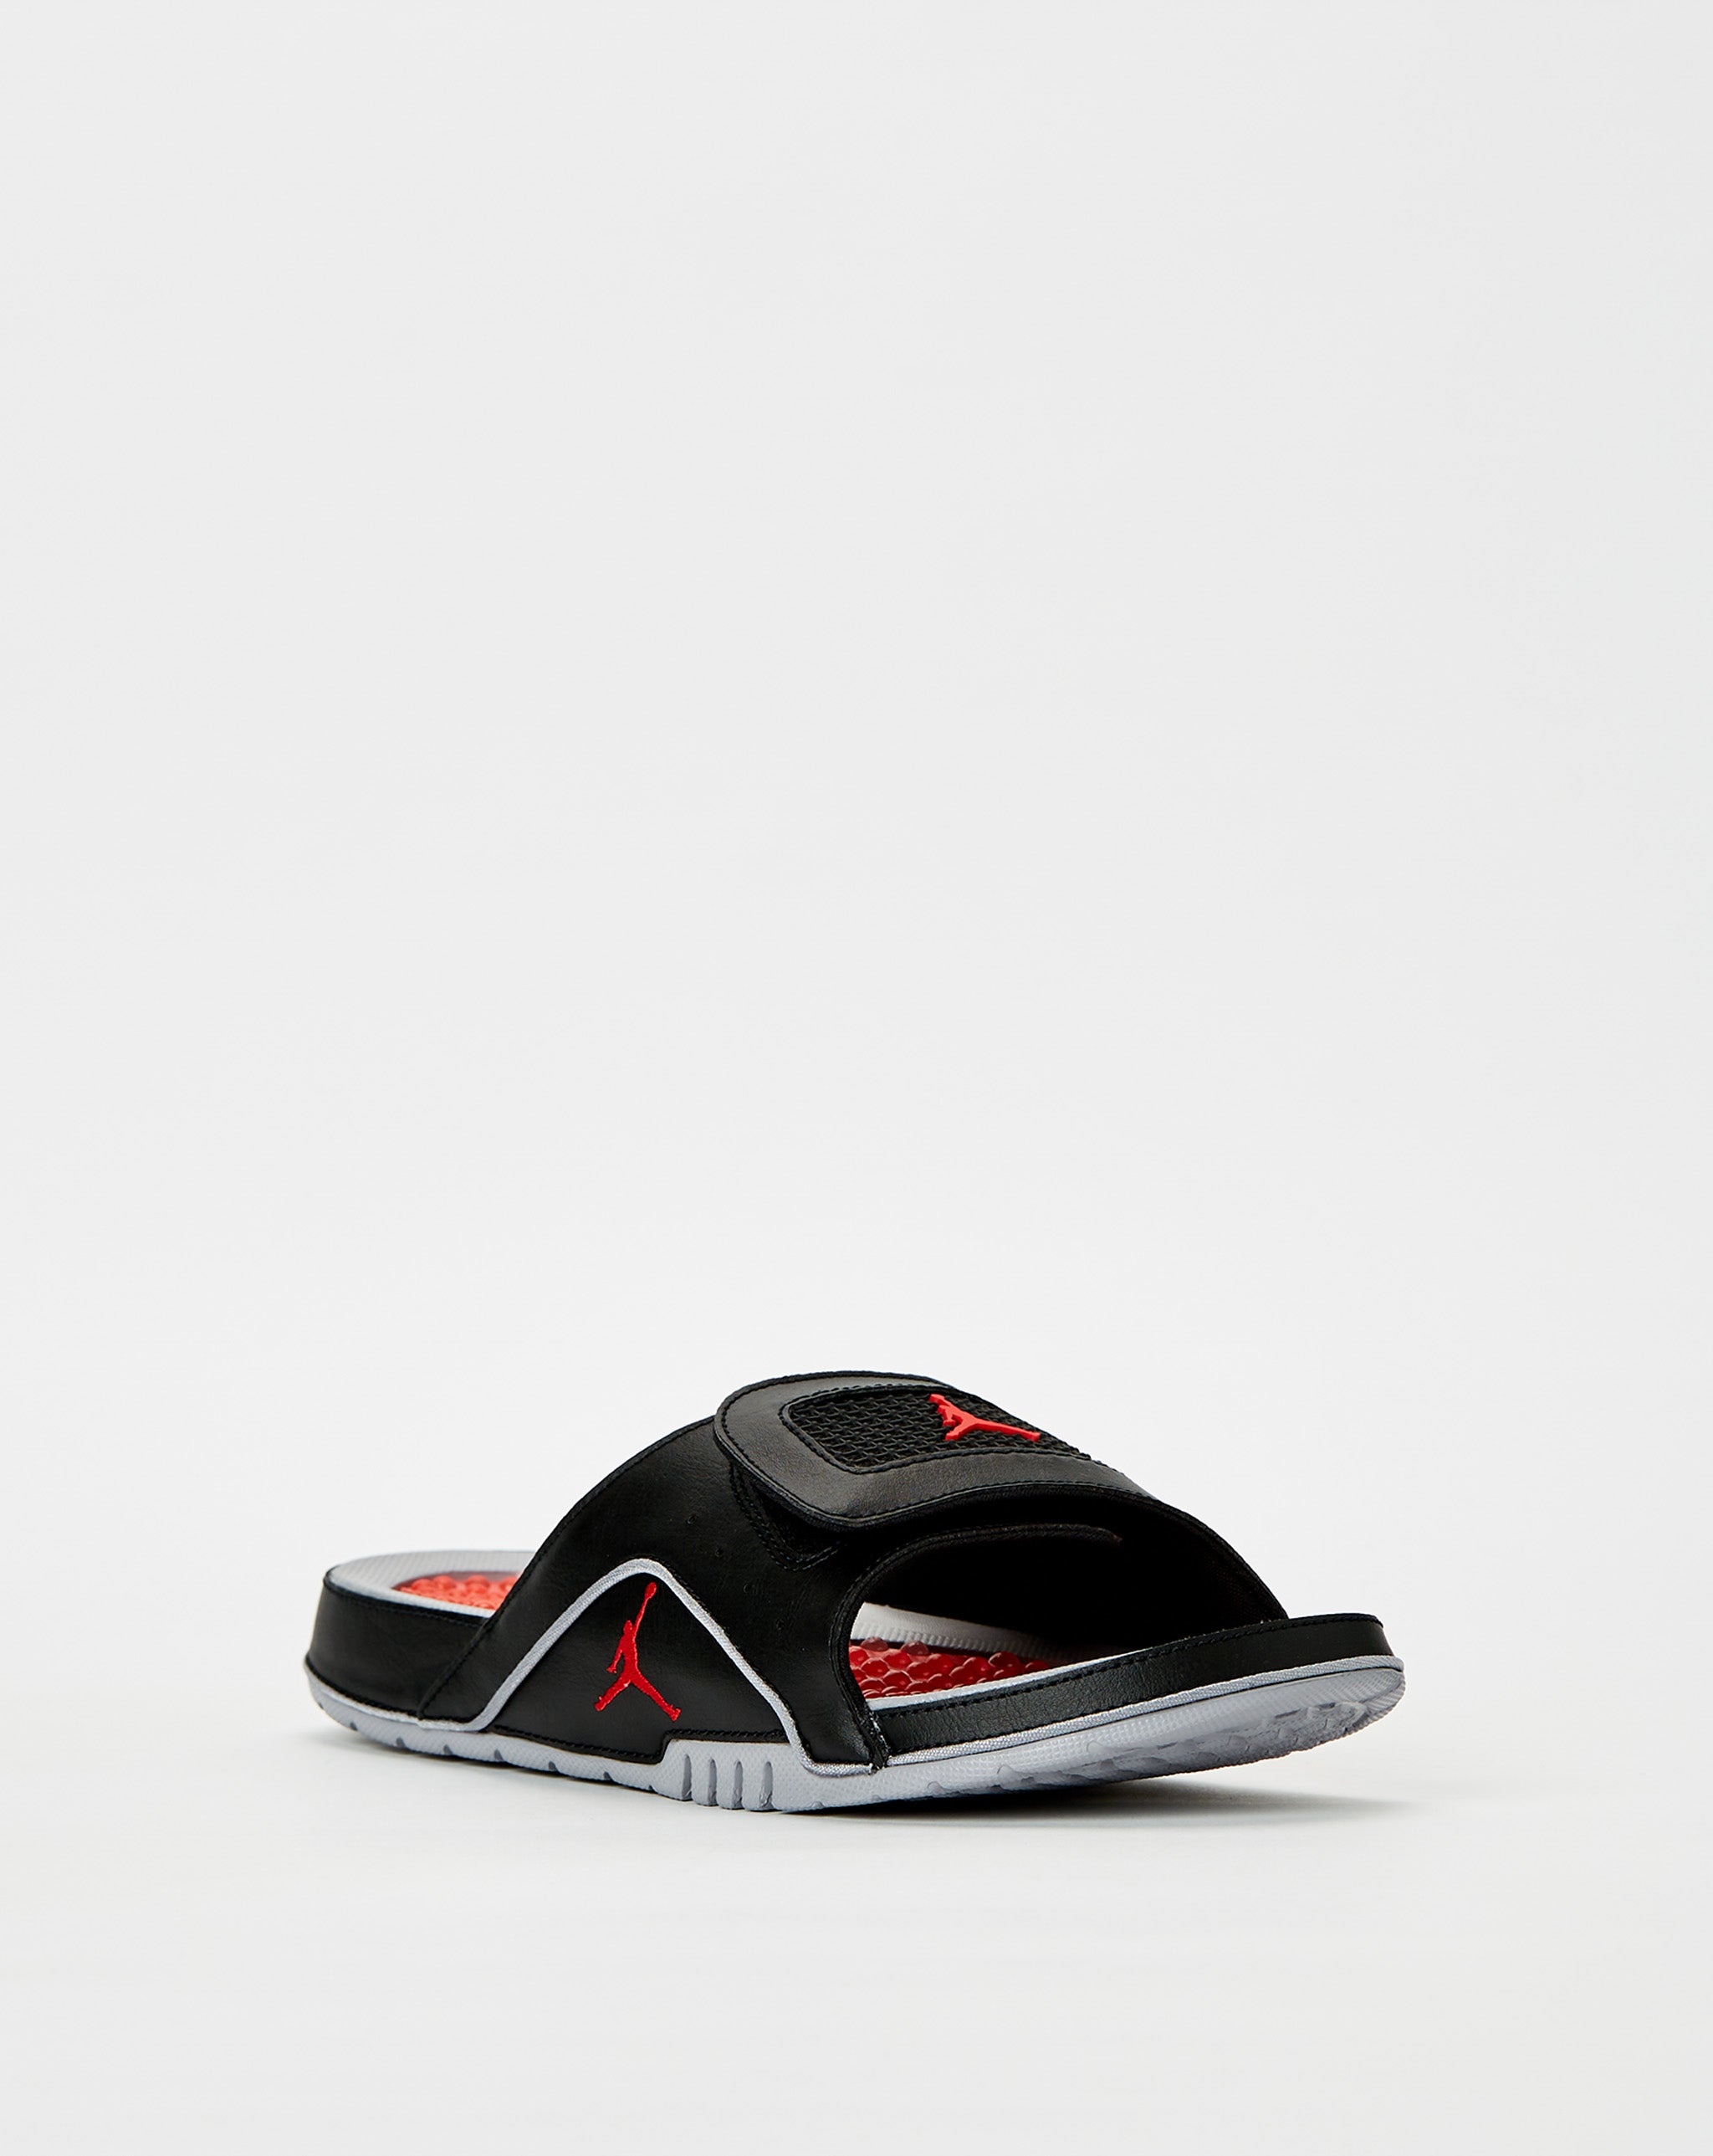 Air Jordan Jordan Hydro 4 Retro - Rule of Next Footwear